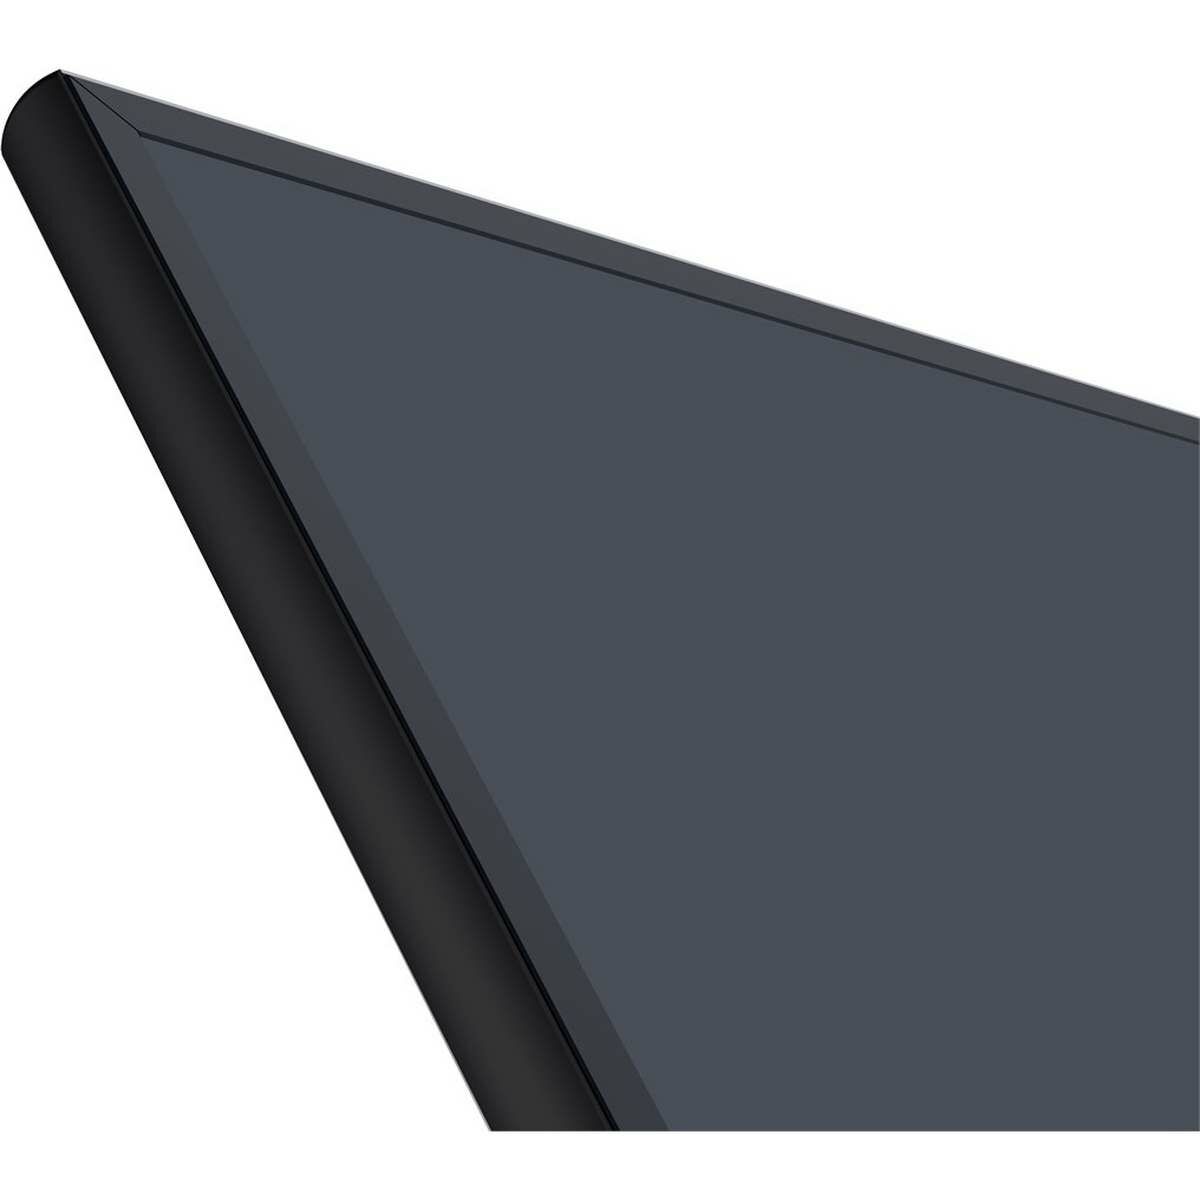 Kép 3/3 - Xiaomi Mi Projector Screen 100 inch fényvisszaverős kivetítő projektorhoz, szürke/fekete EU BHR4403GL